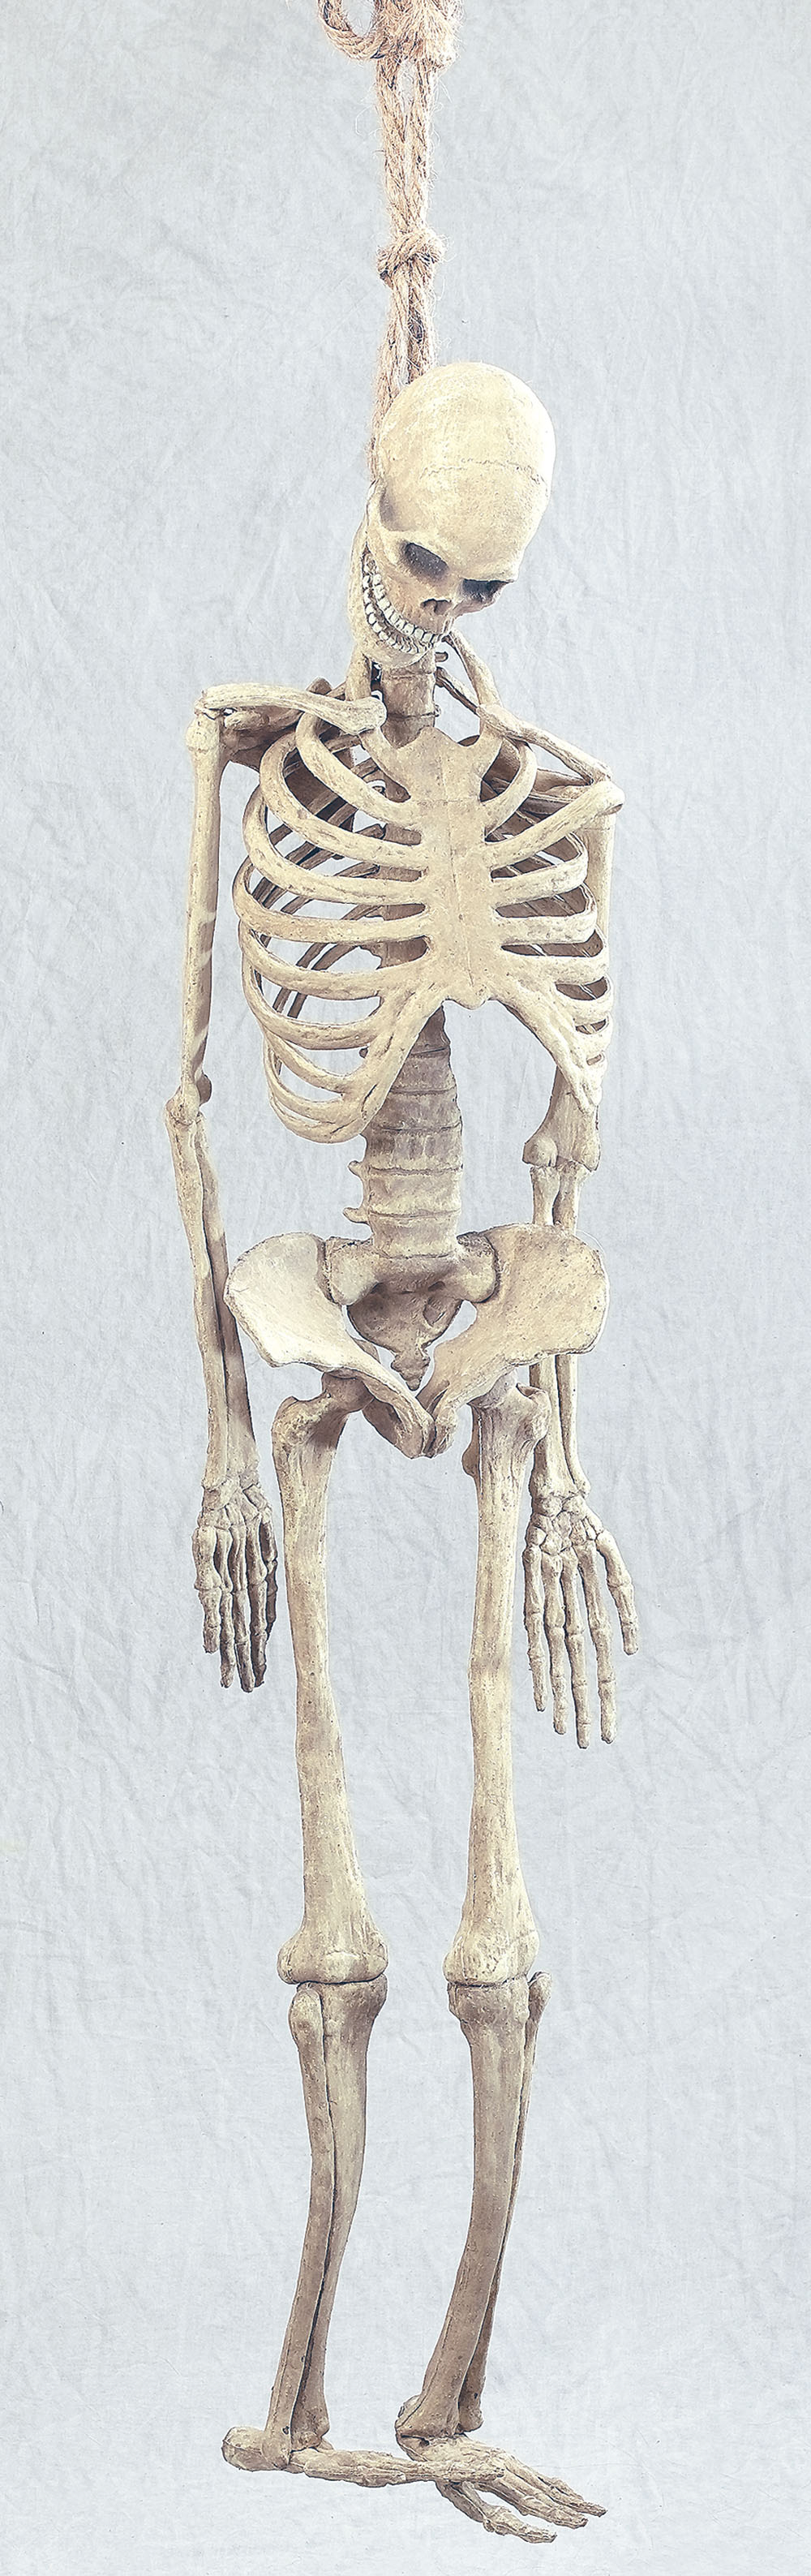 Skeleton. Full Size Rubber